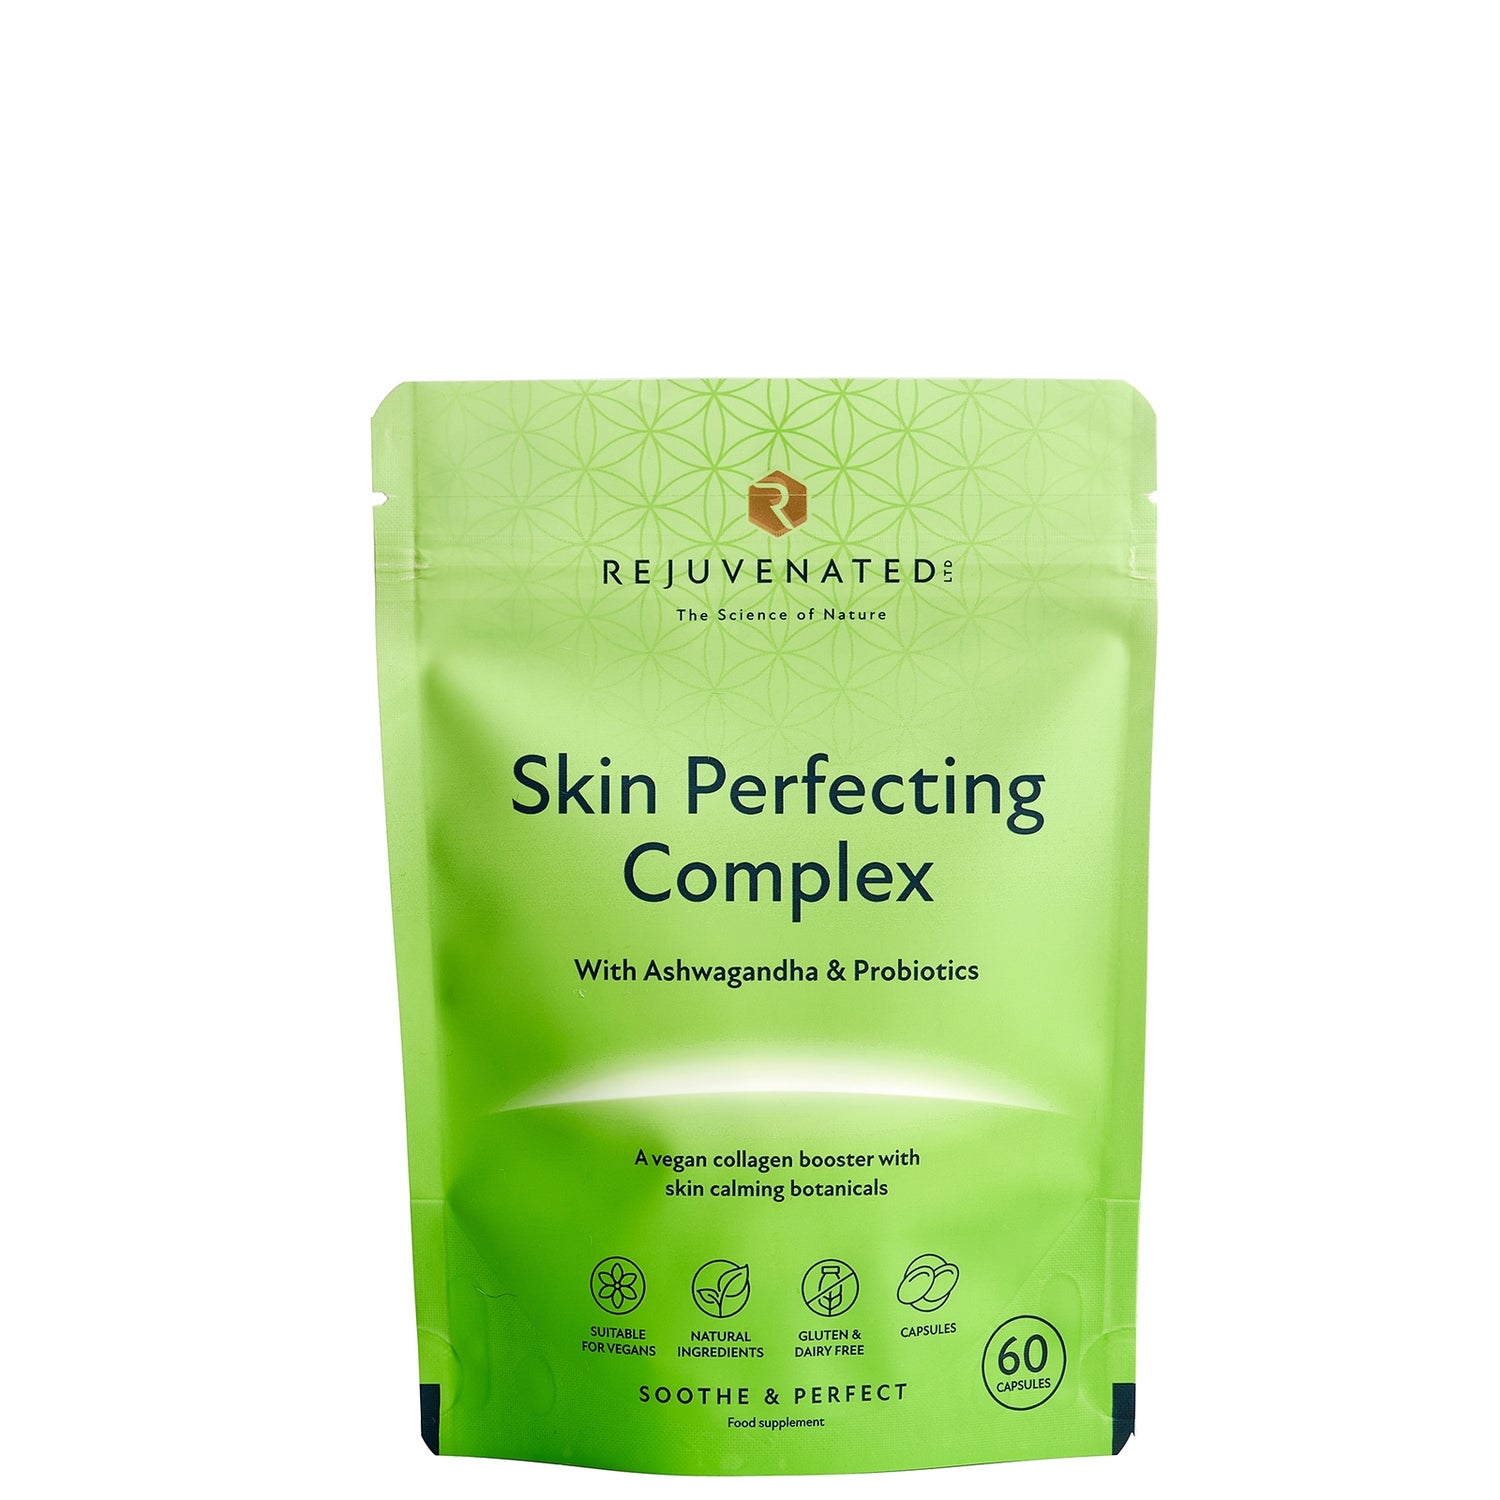 Rejuvenated Ltd Skin Perfecting Complex - 60 Capsules (Worth $34.00)